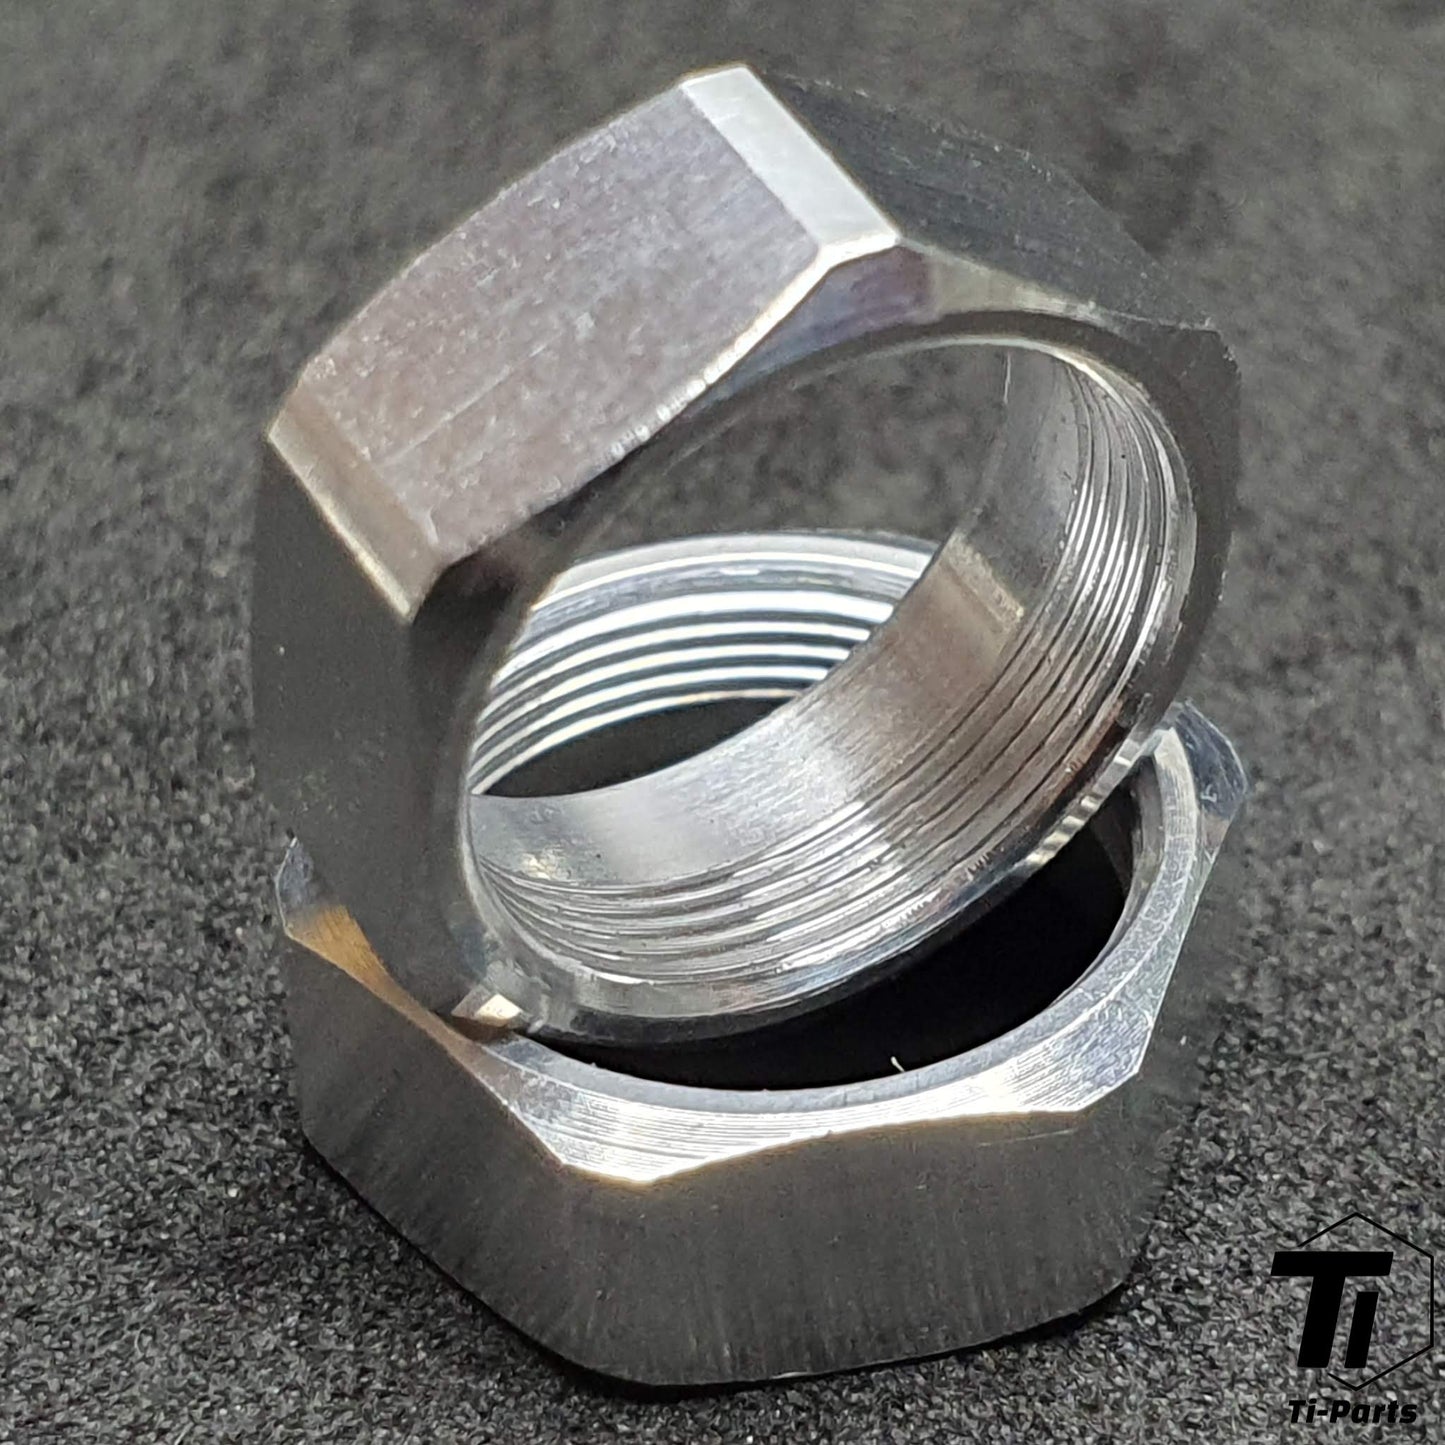 Titanium Axle for Look Pedal | Keo 2 Max Blade Carbon Ceramic Ti | Grade 29 Titanium Singapore